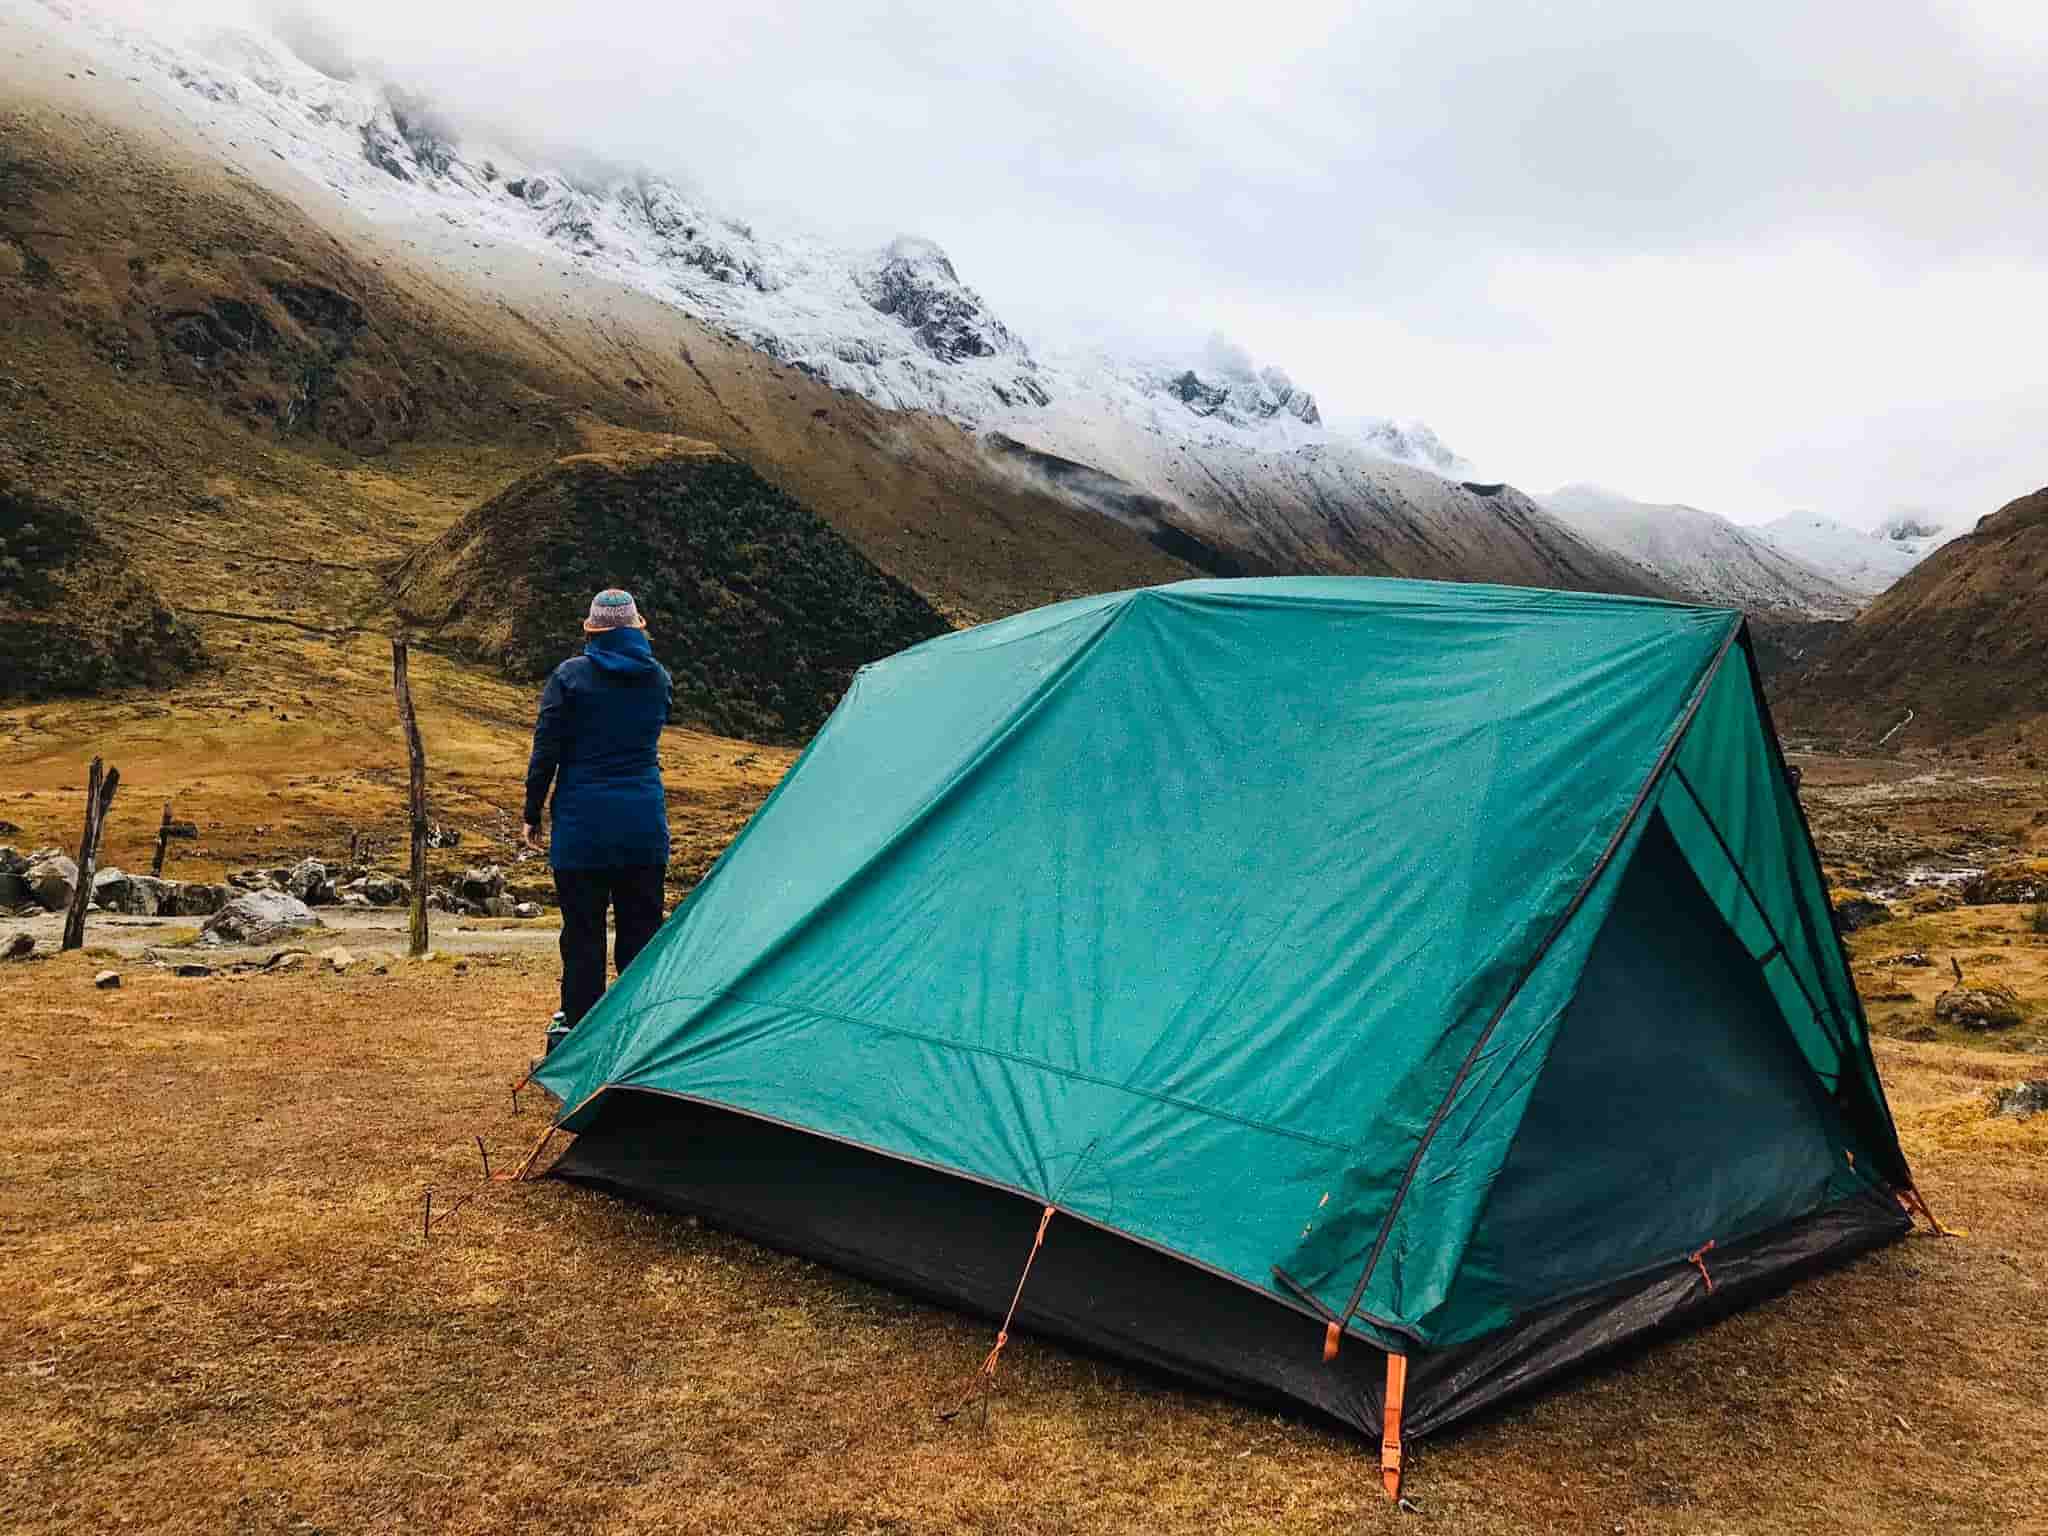  Primera vista del campamento - Camino Inca Salkantay